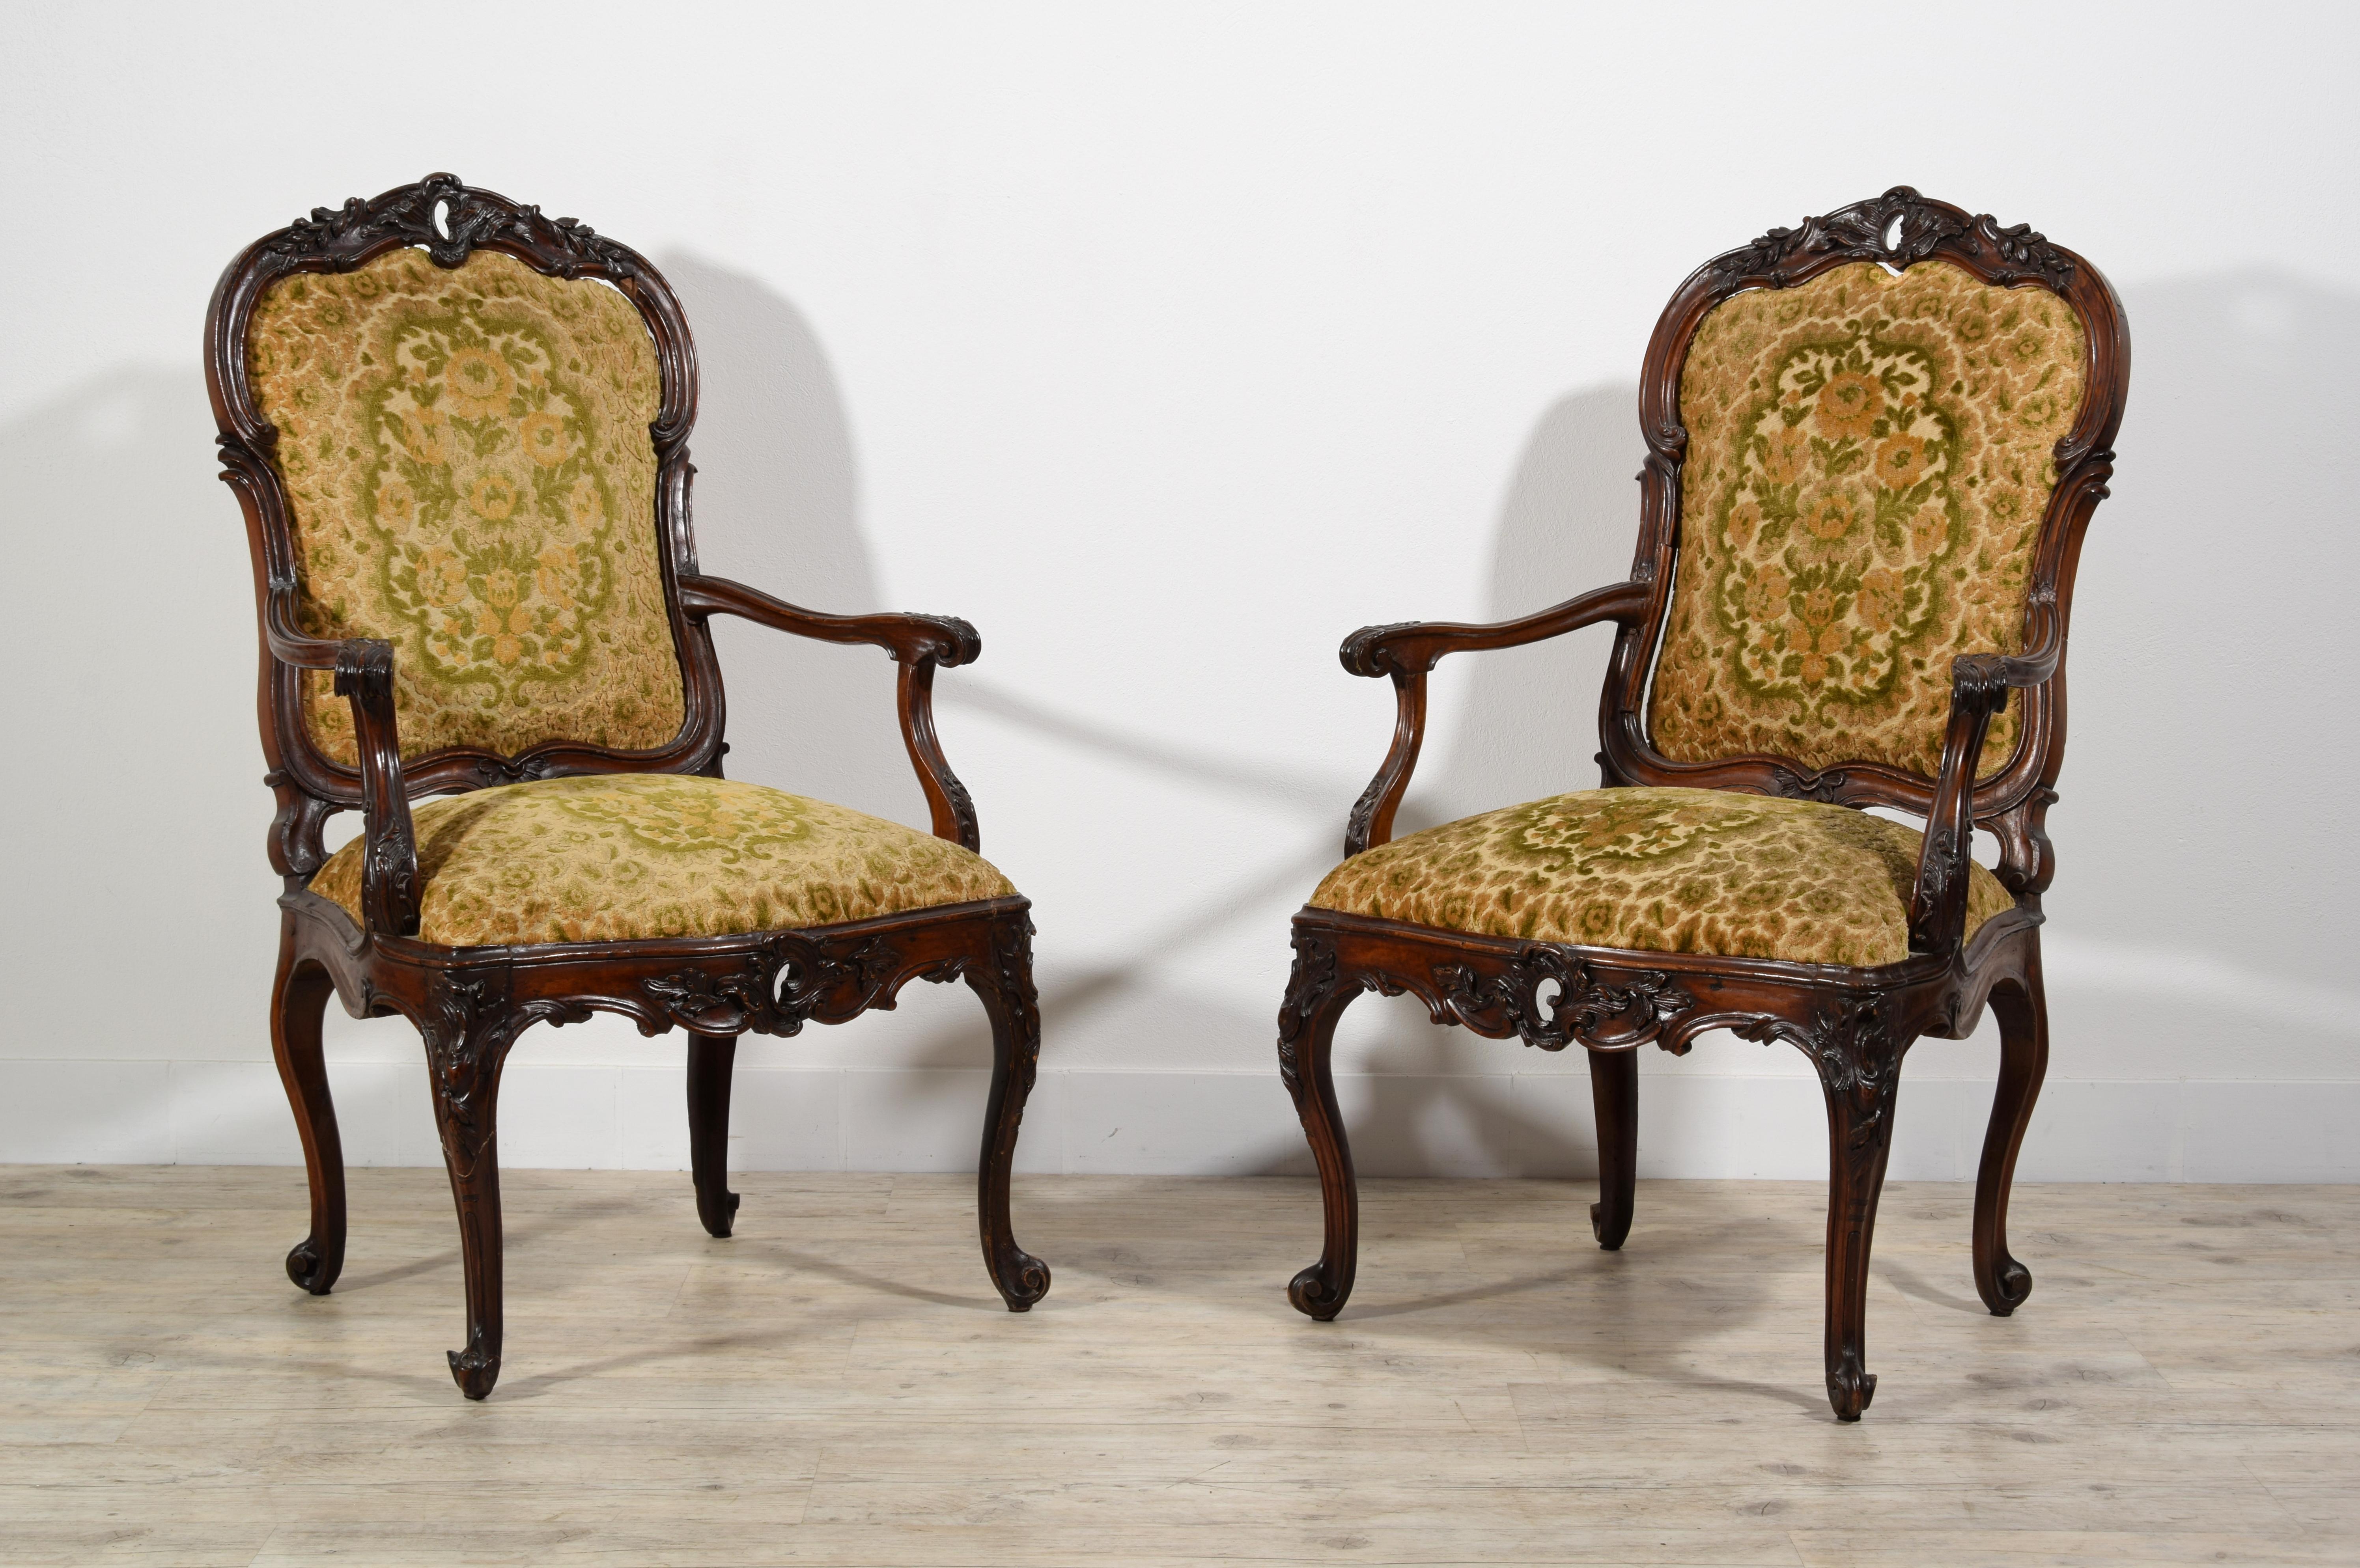 18ème siècle, paire de fauteuils italiens en bois

Cette belle paire de fauteuils a été fabriquée en Lombardie, en Itay, vers le milieu du XVIIIe siècle. En bois de noyer sculpté, ils présentent une plante mixte et ondulée caractéristique du